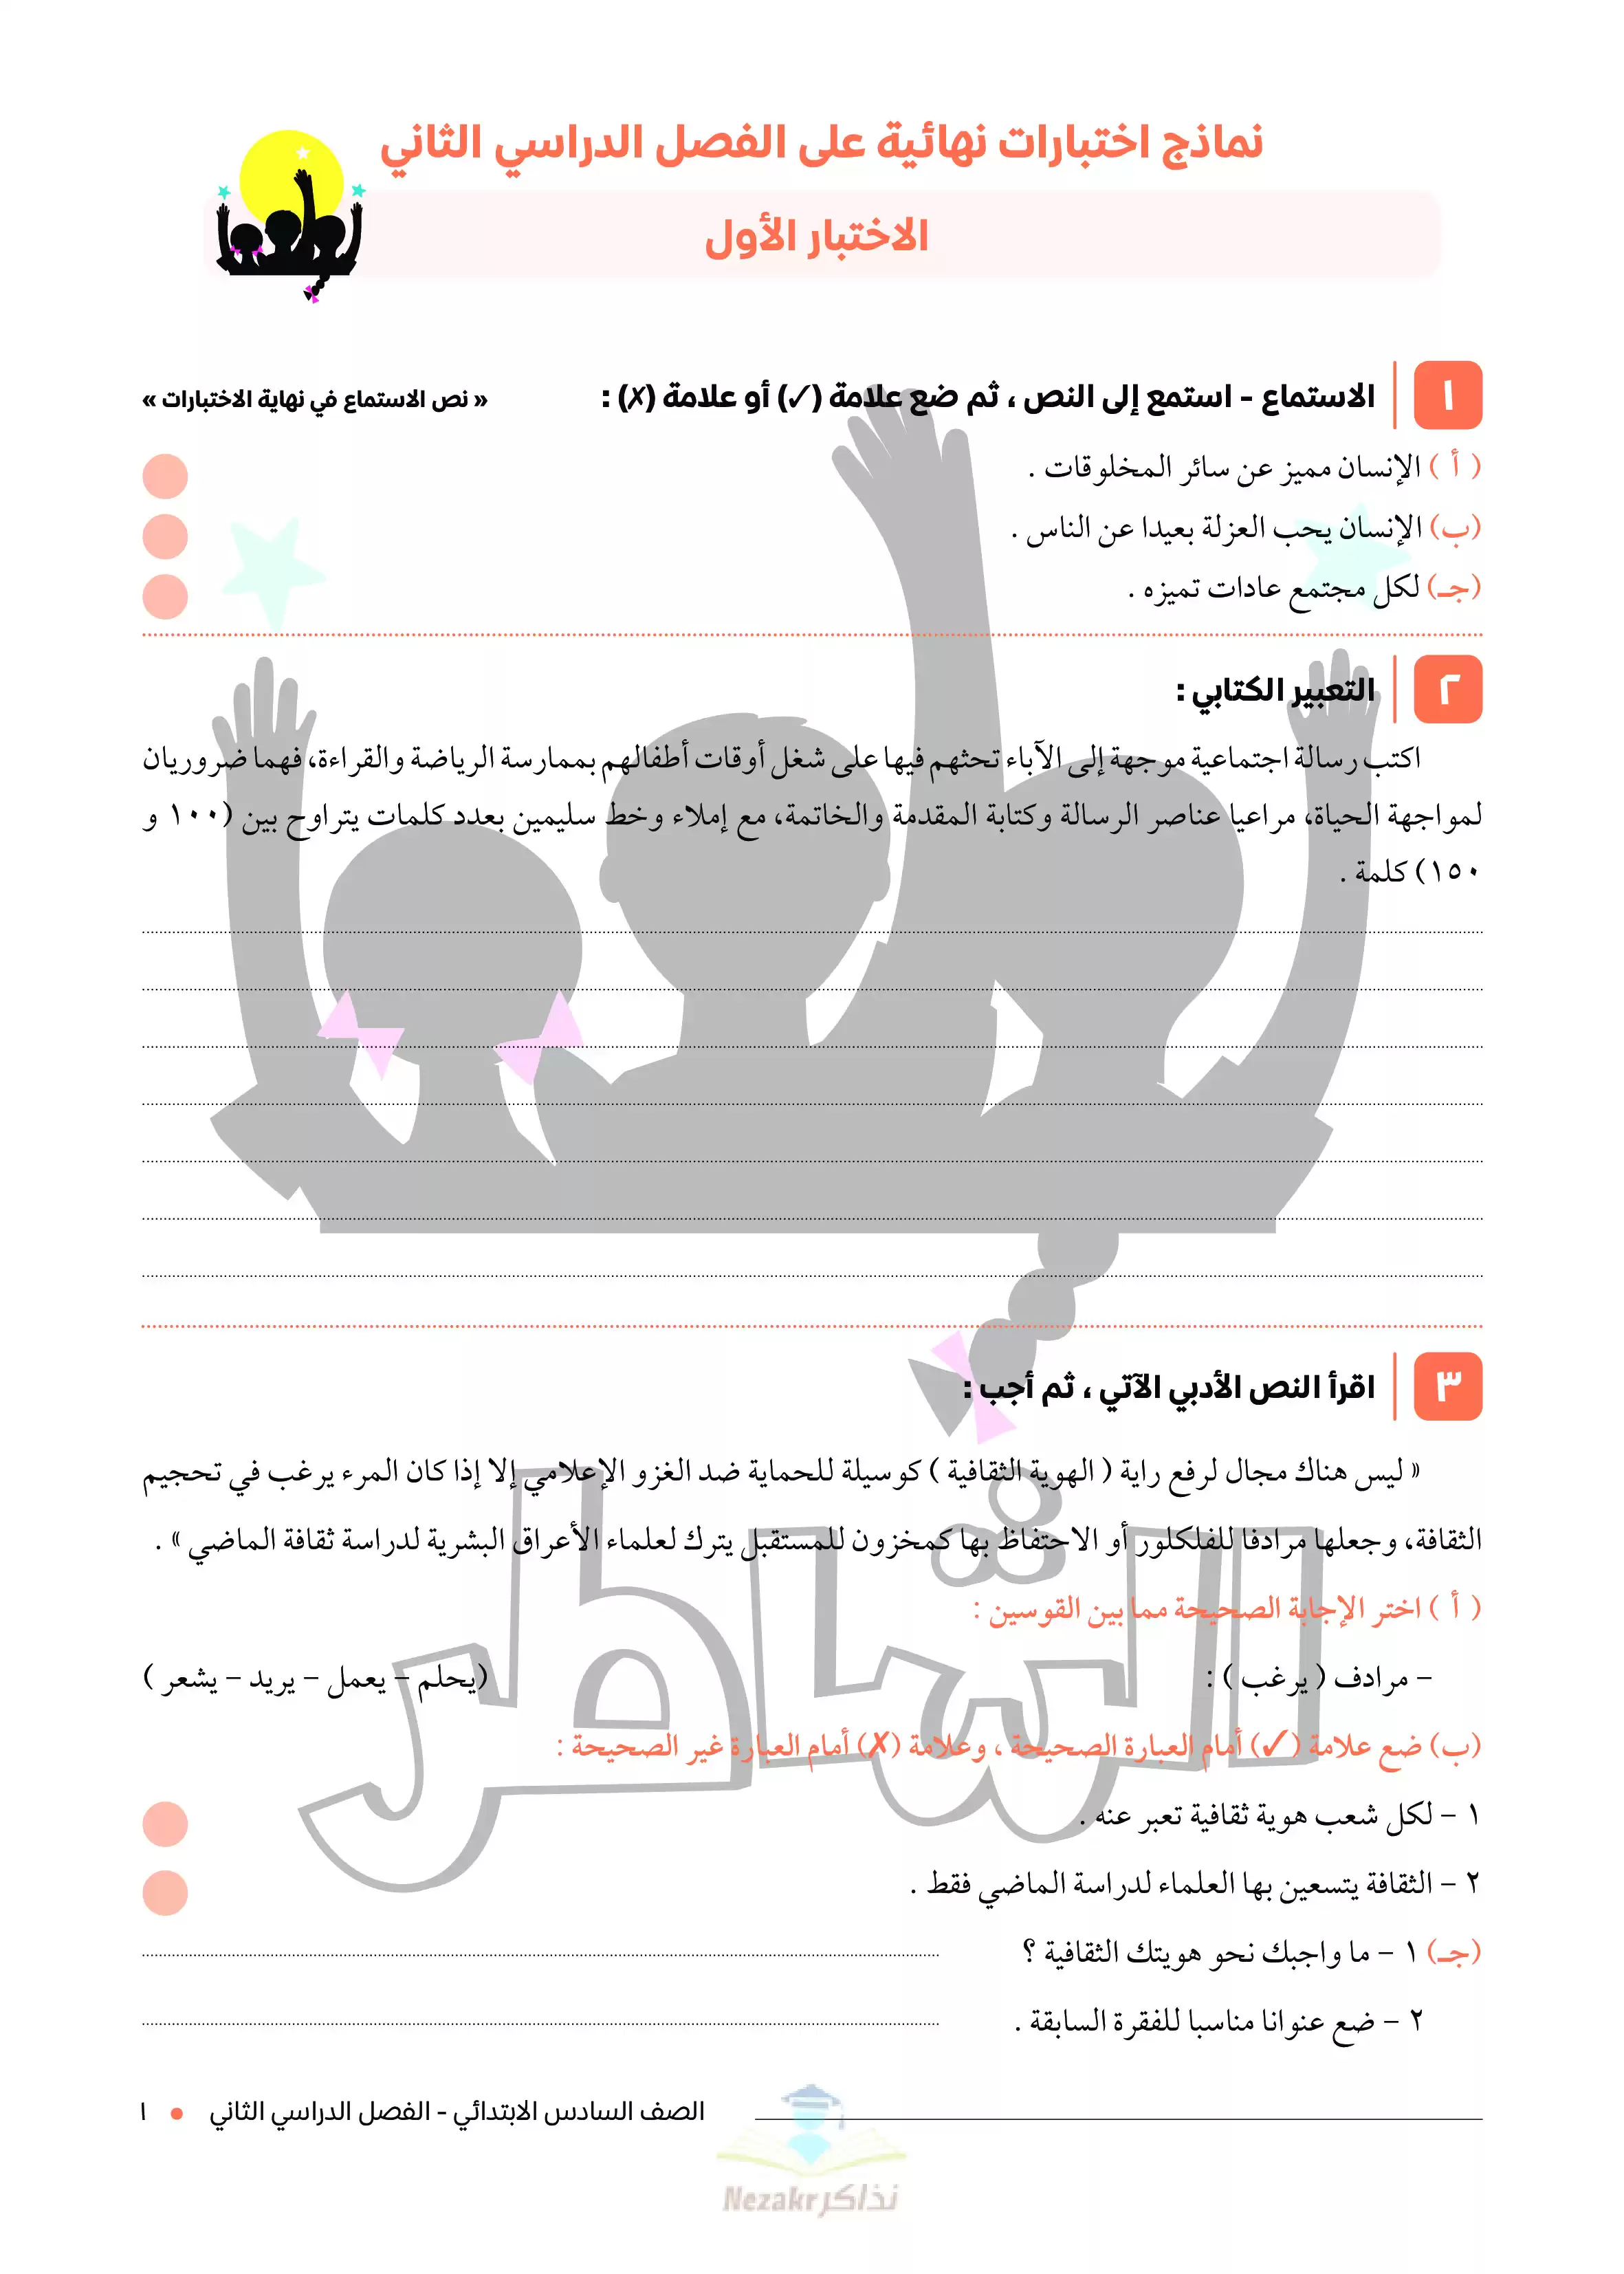 تحميل اختبارات الشاطر في اللغة العربية للصف السادس الابتدائي ترم ثاني